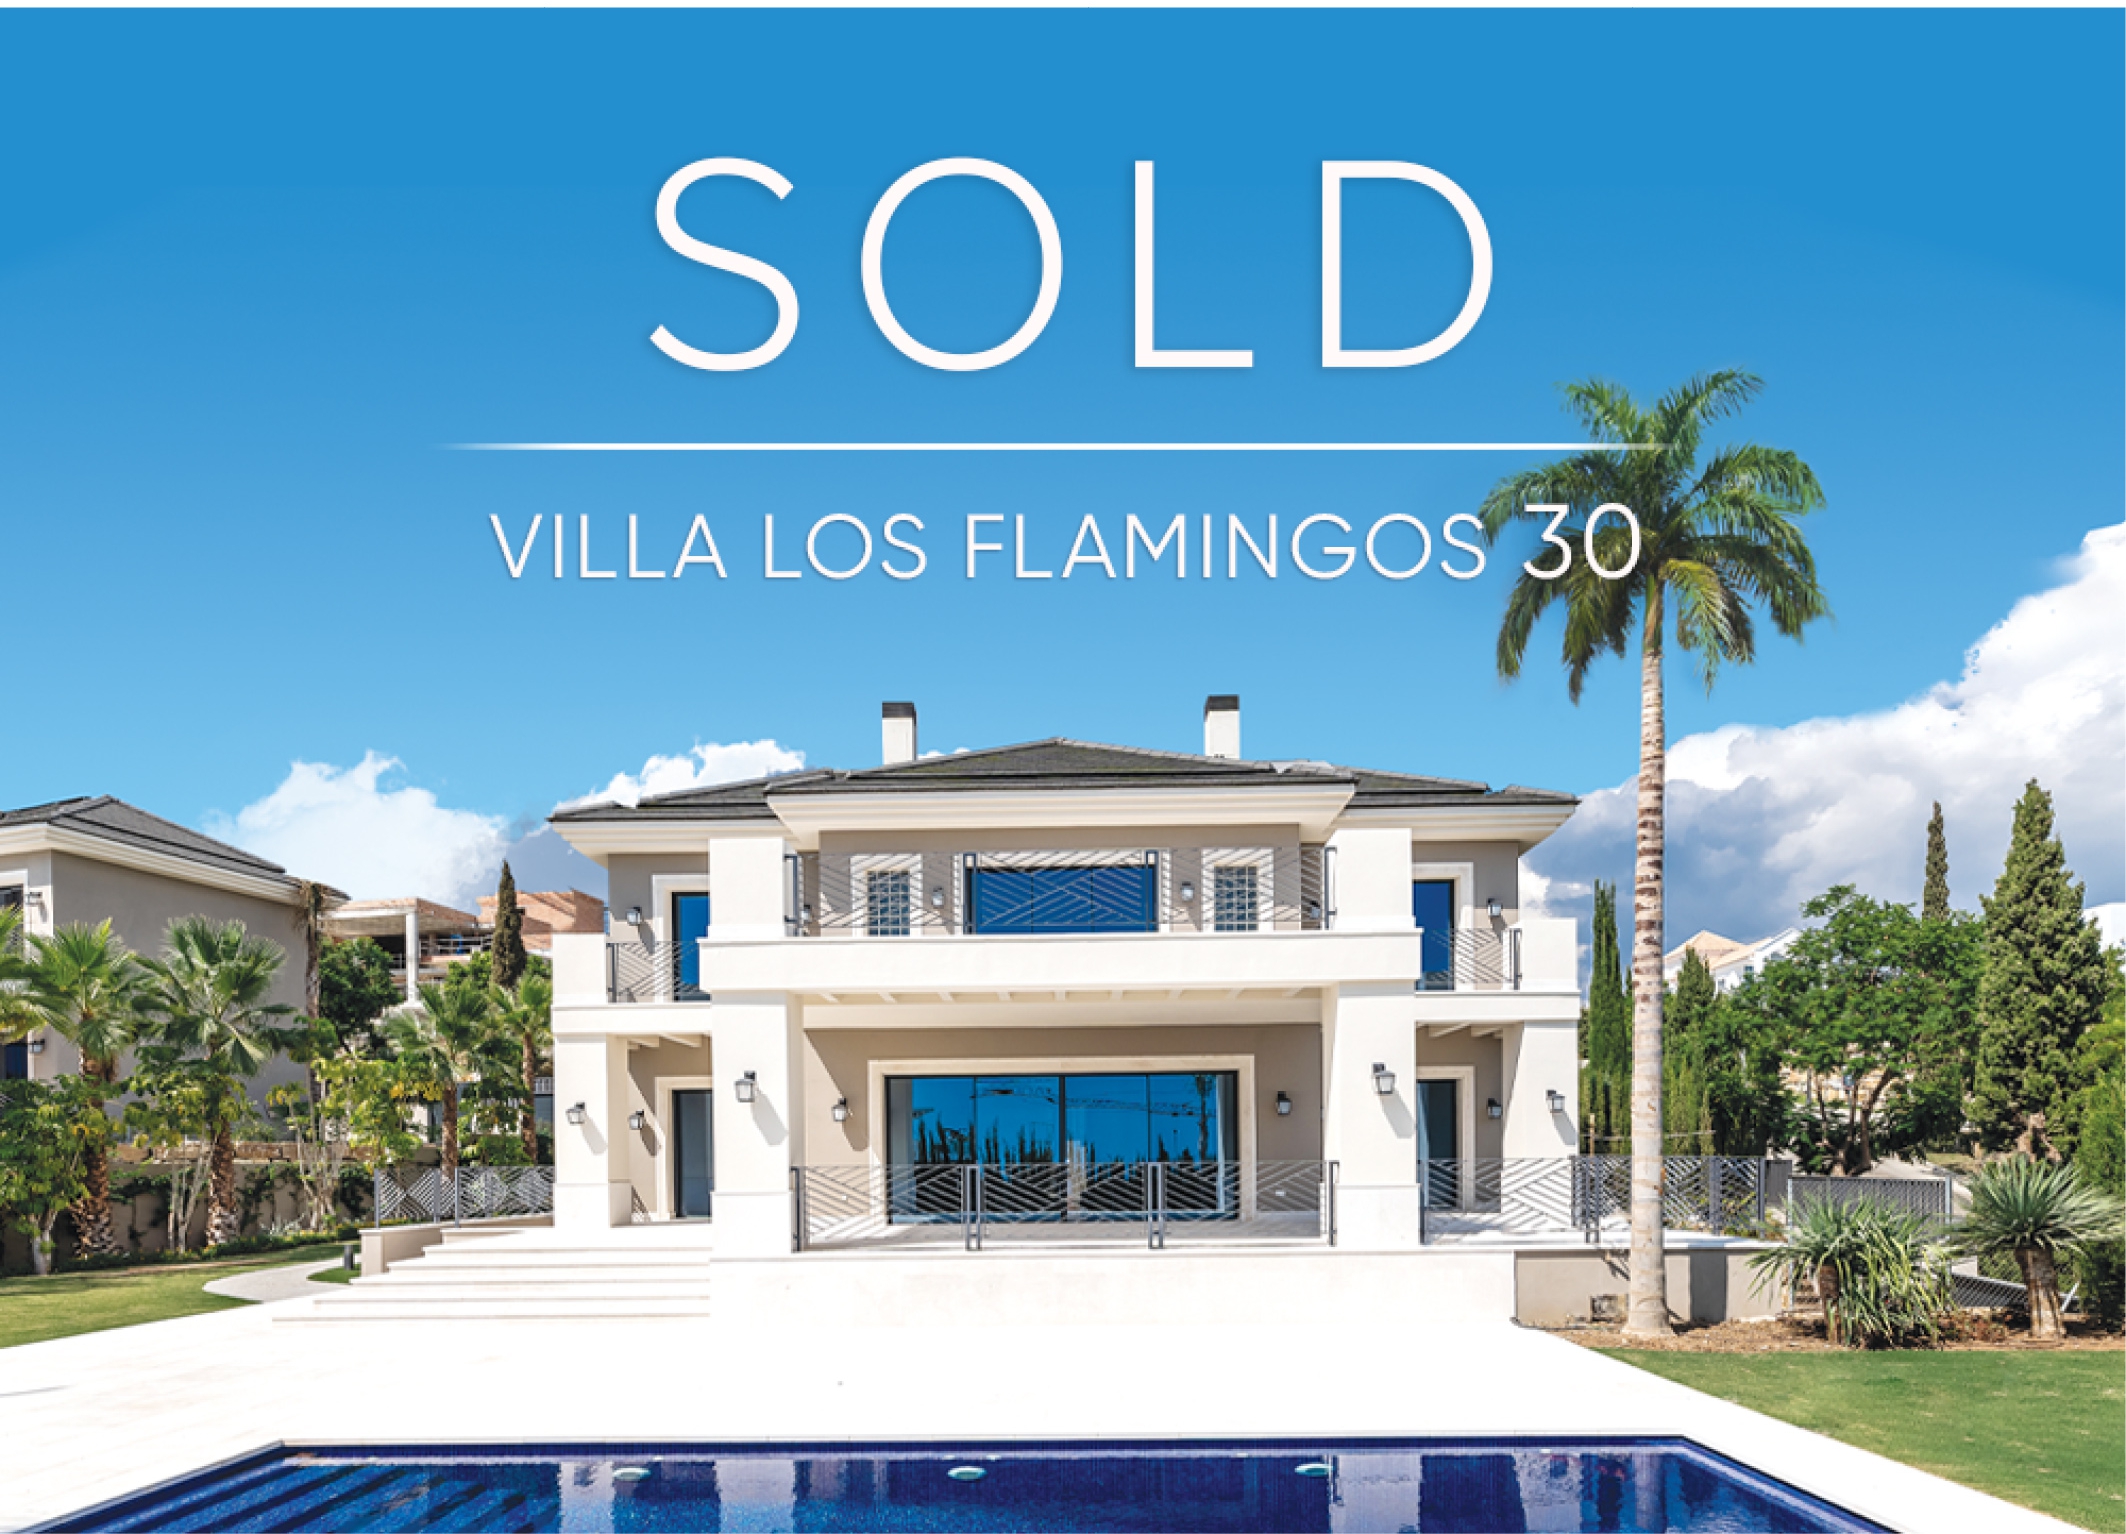 Hot News! Villa Los Flamingos 30 is Sold!